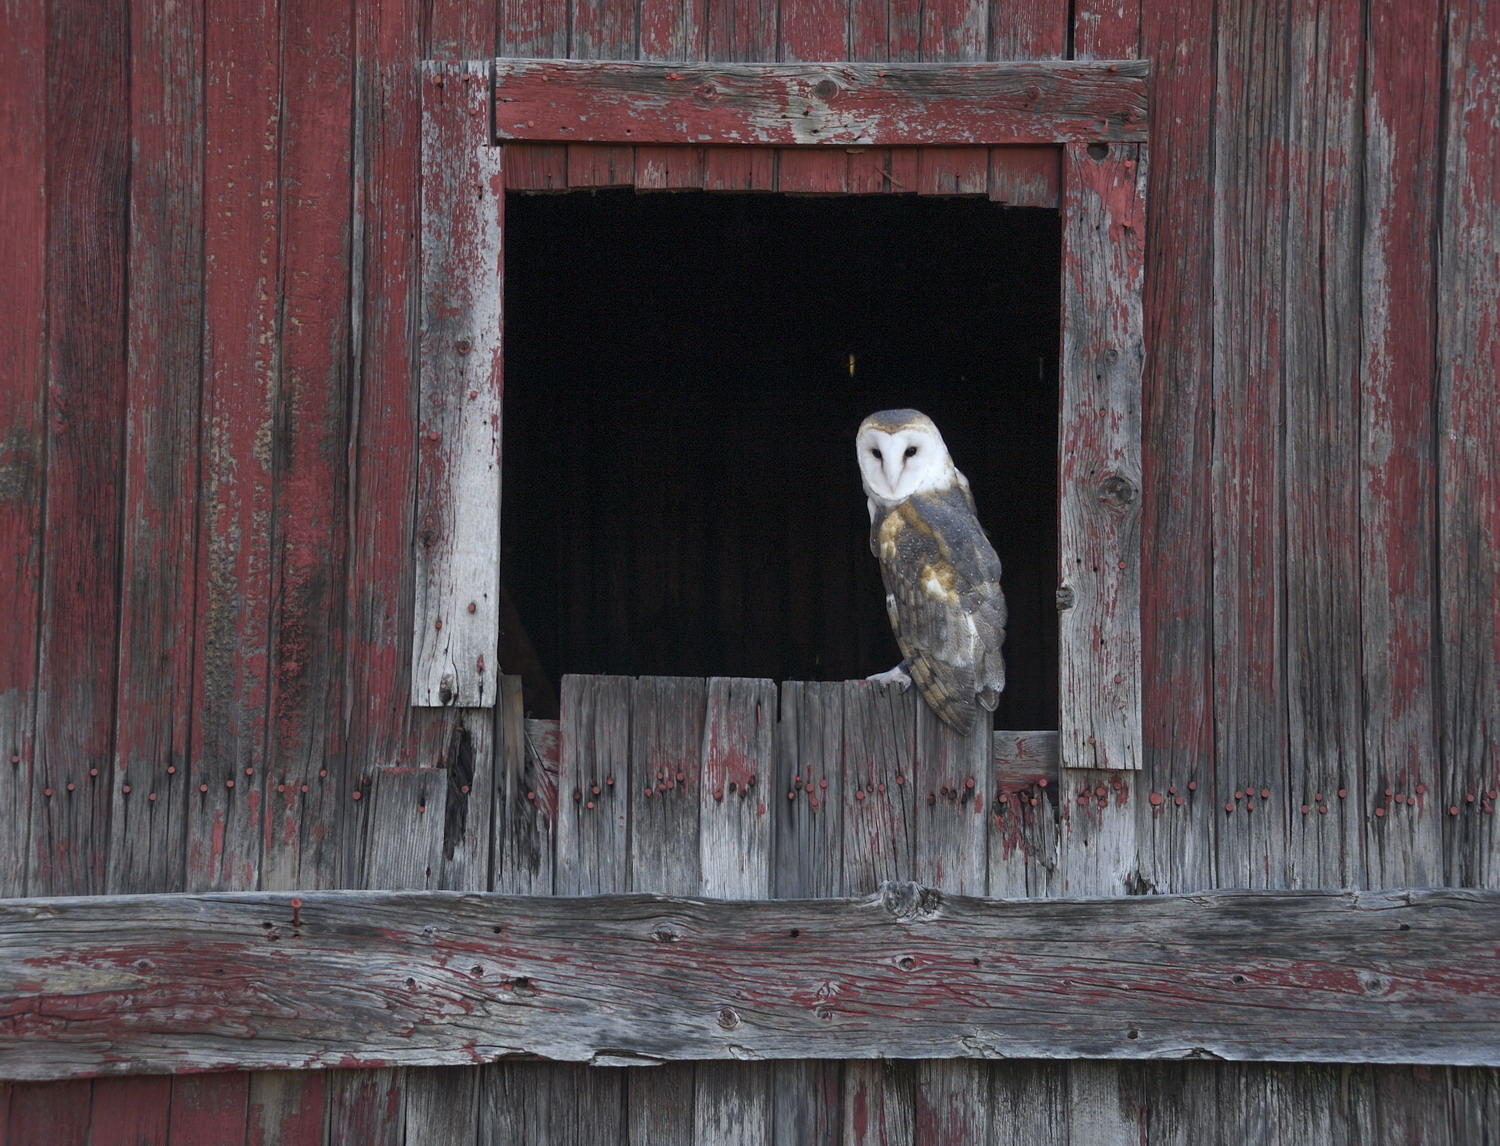 DSC_15100_1A2 - Barn Owl